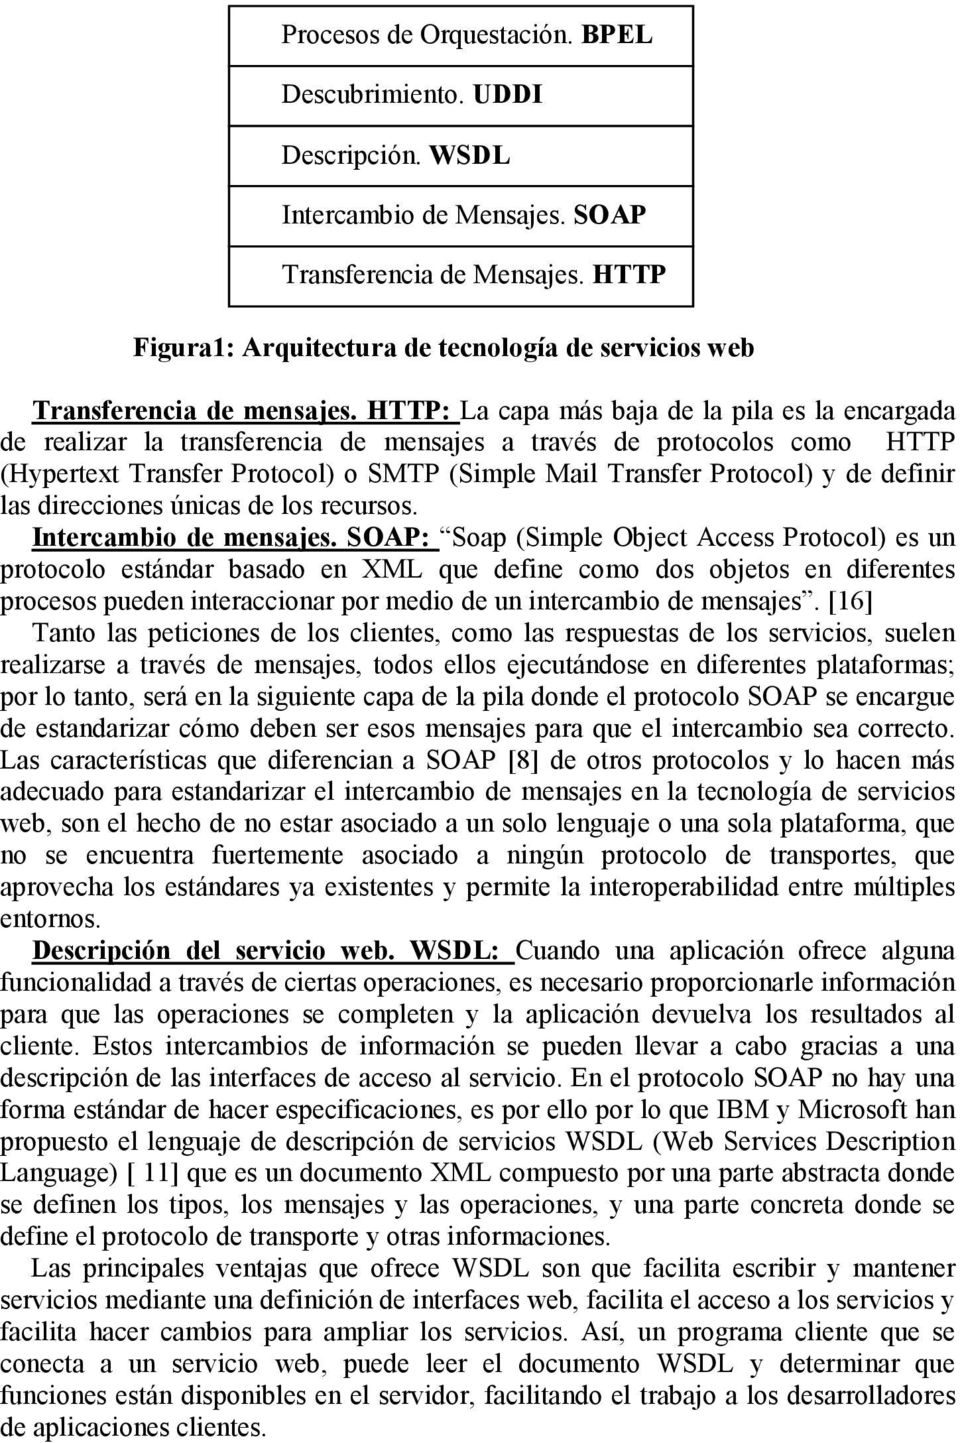 HTTP: La capa más baja de la pila es la encargada de realizar la transferencia de mensajes a través de protocolos como HTTP (Hypertext Transfer Protocol) o SMTP (Simple Mail Transfer Protocol) y de